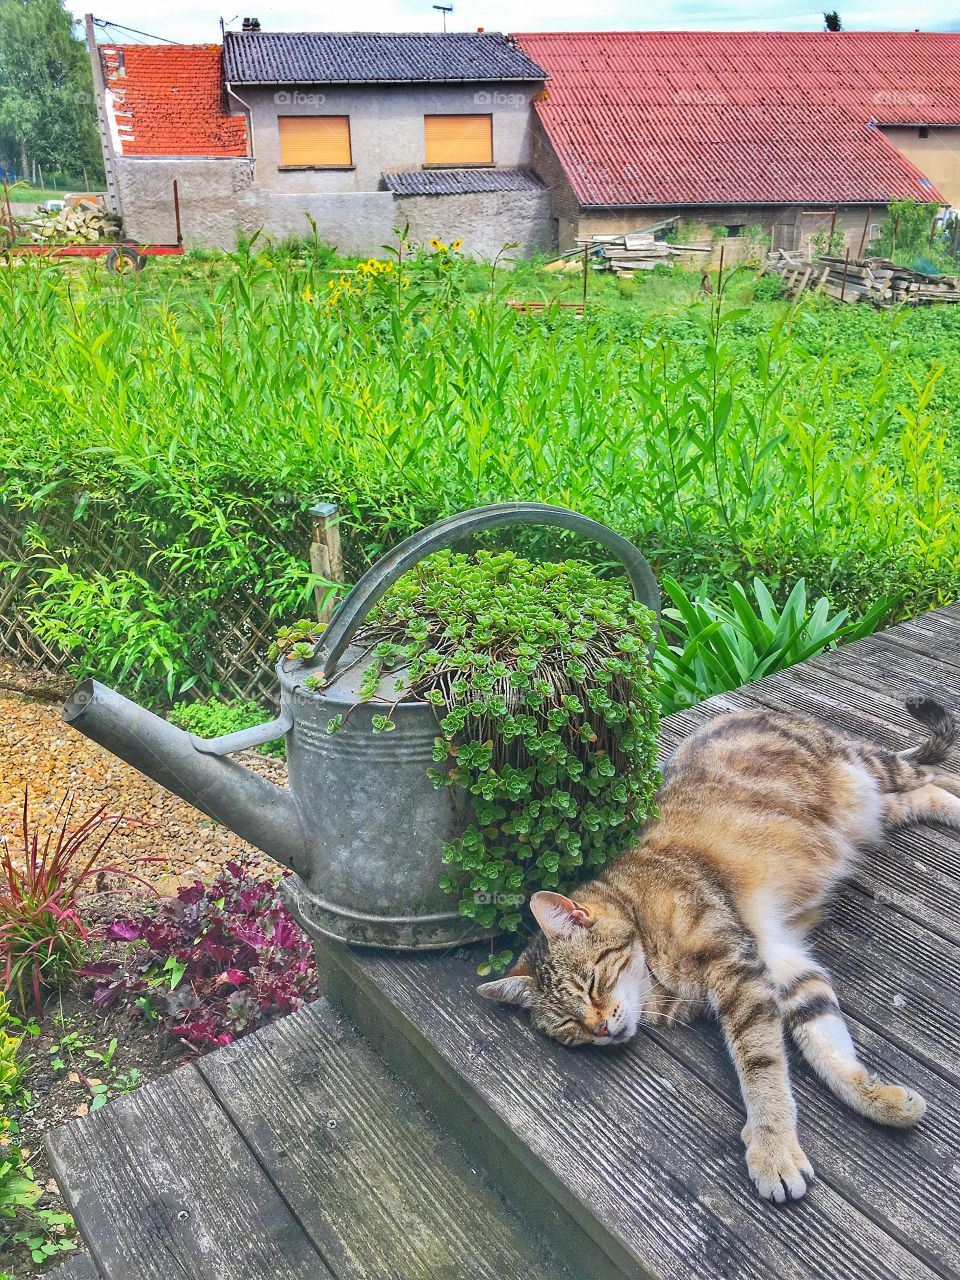 Garden cat